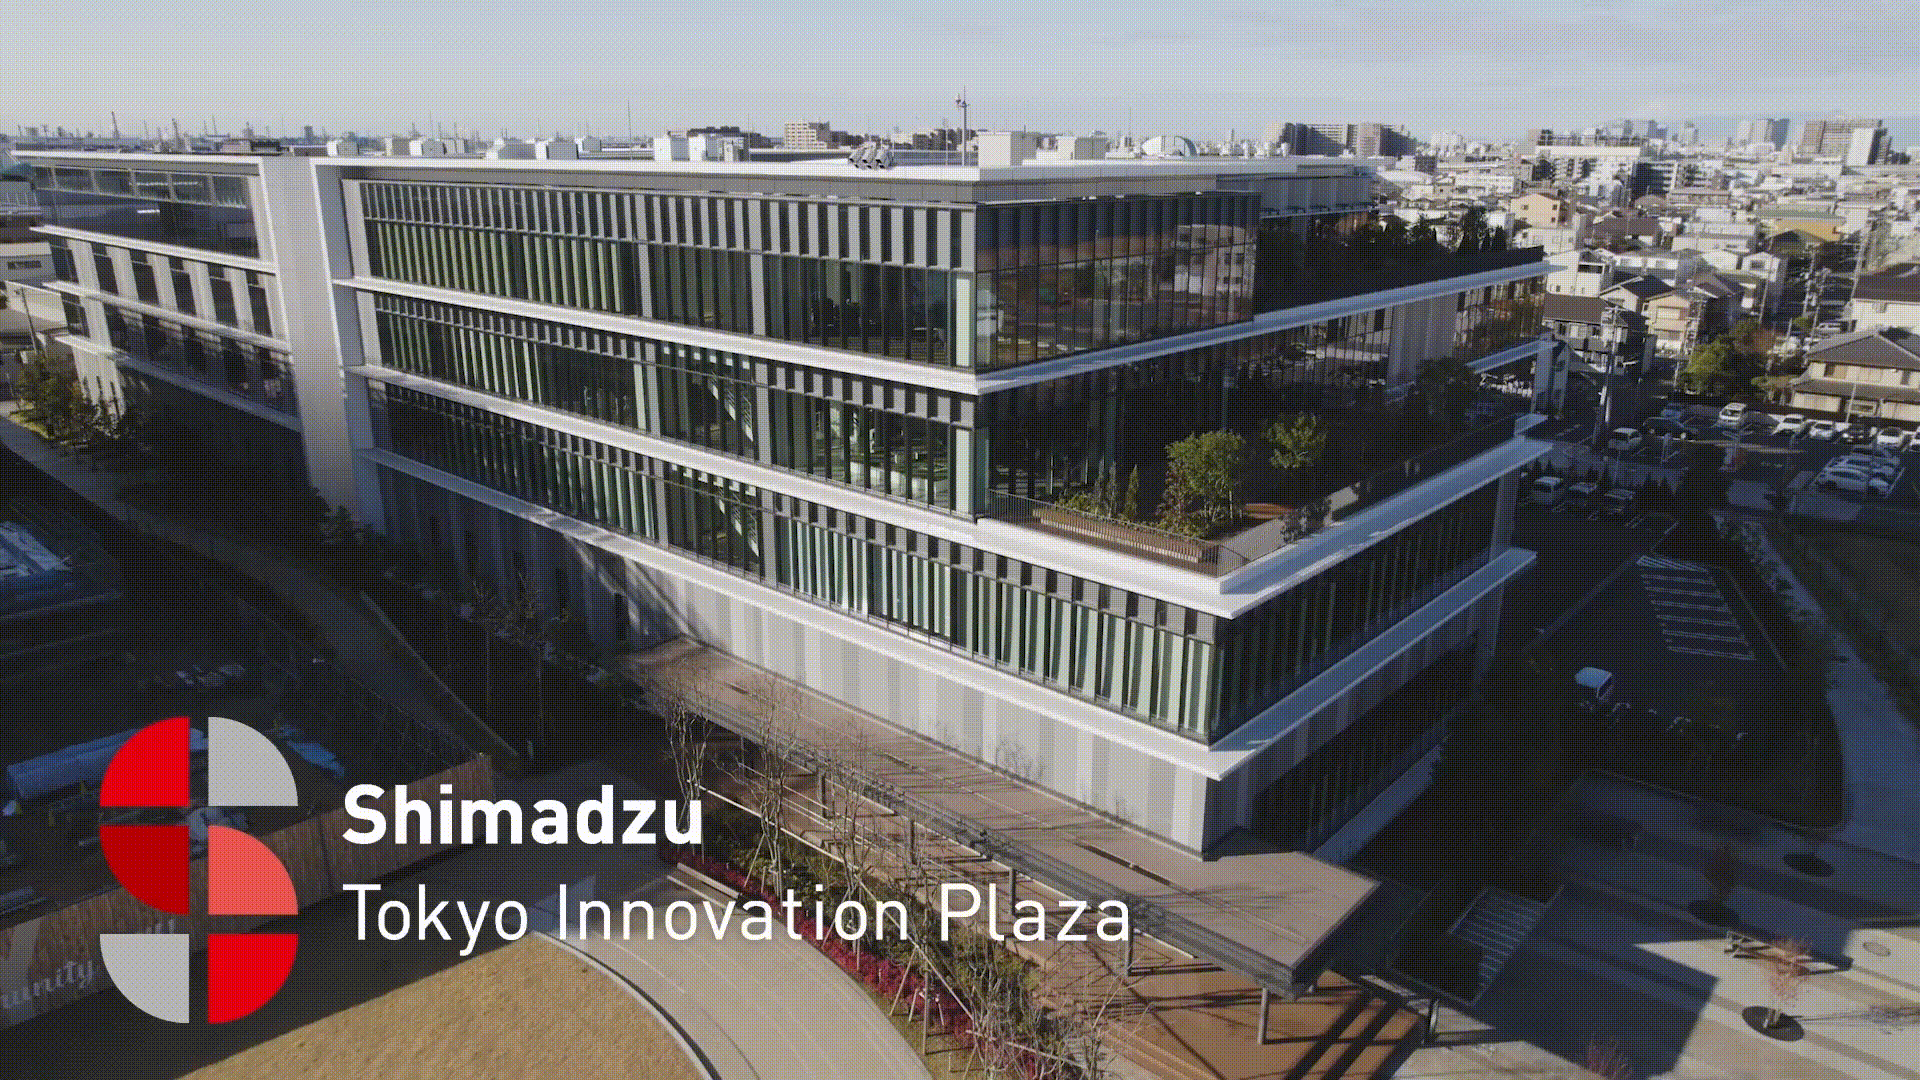 Shimadzu Tokyo Innovation Plaza